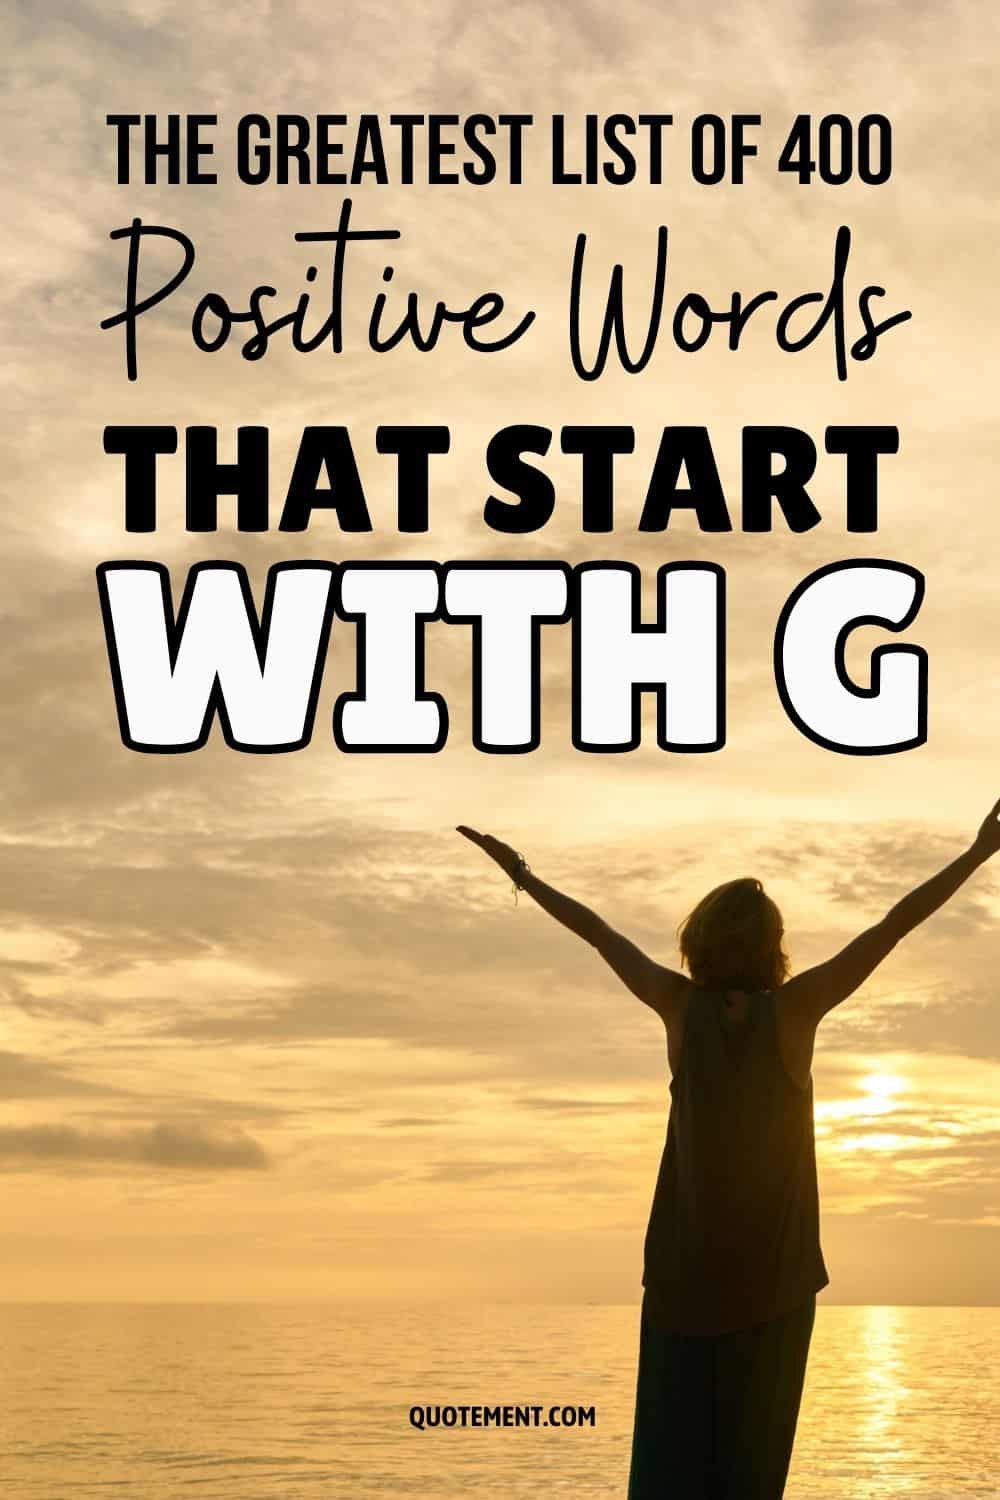 La mejor lista de 400 palabras positivas que empiezan por G